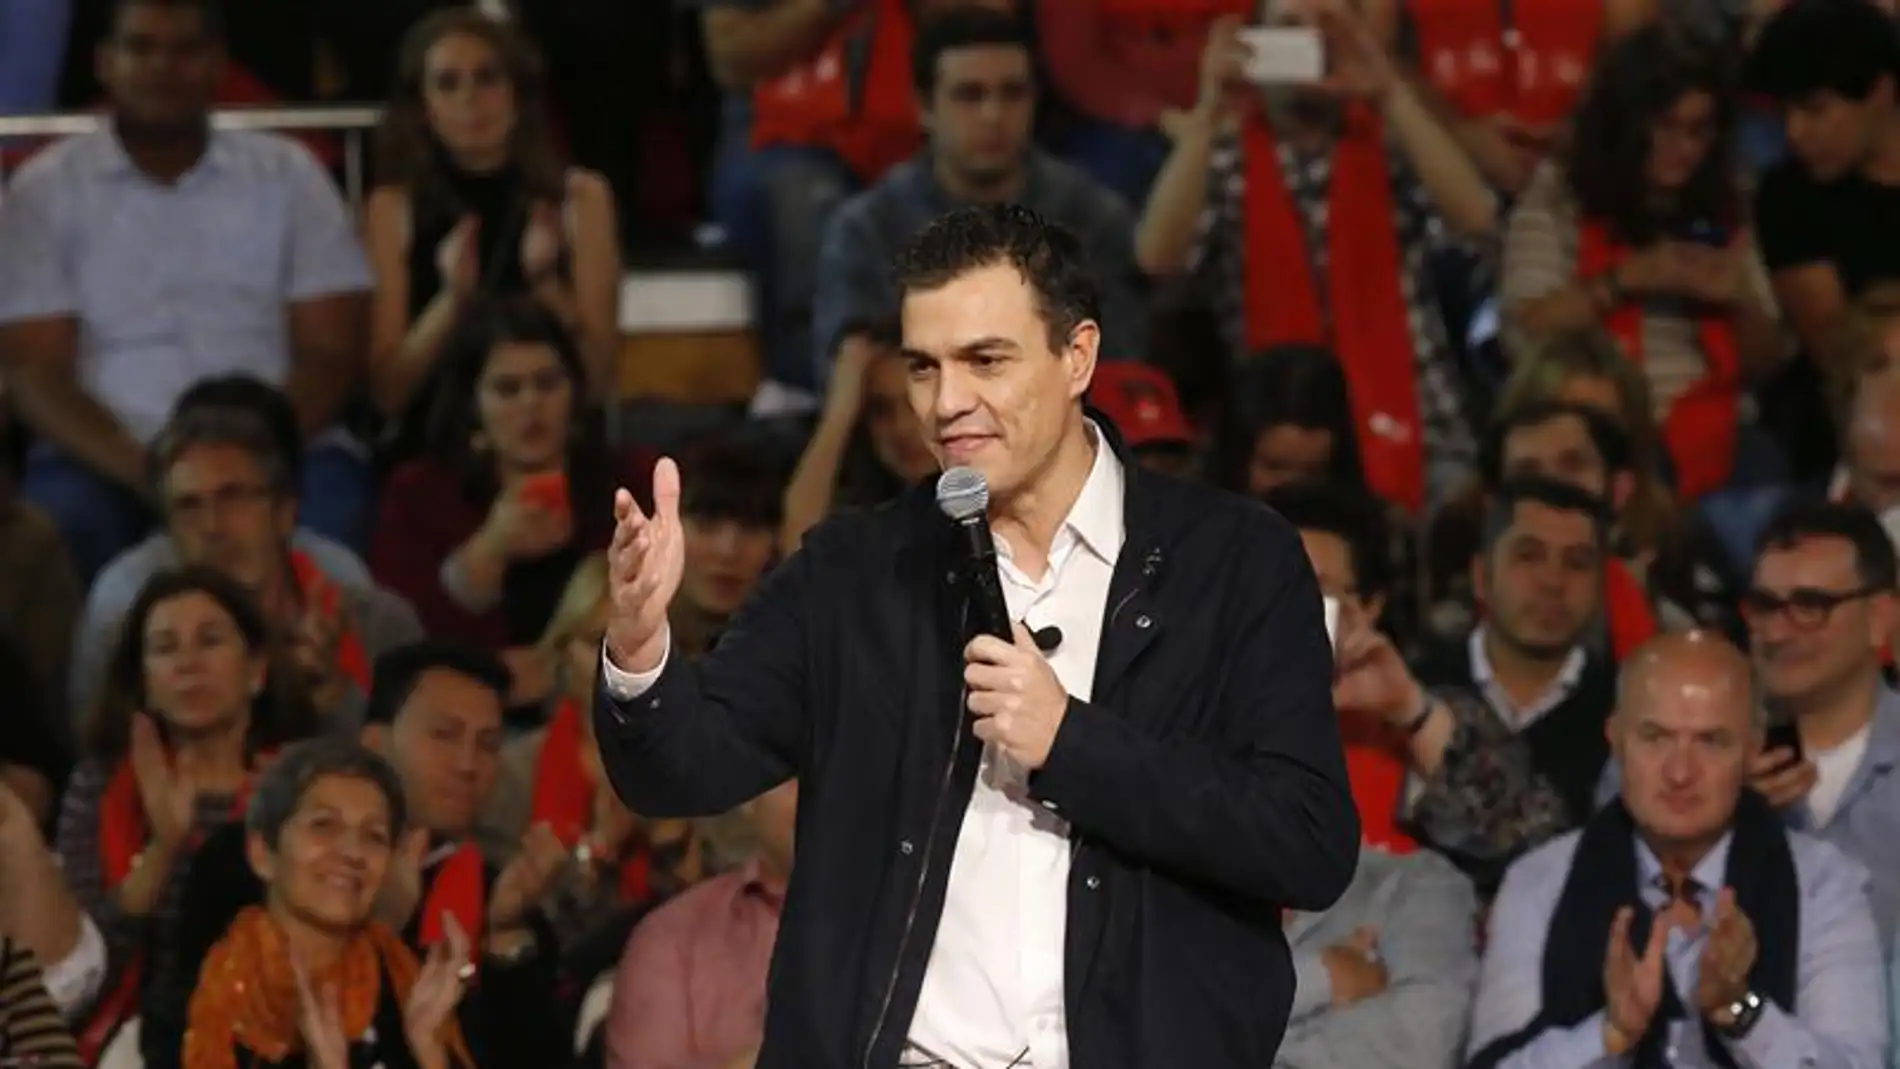 Pedro Sánchez en su cierre de campaña en Madrid